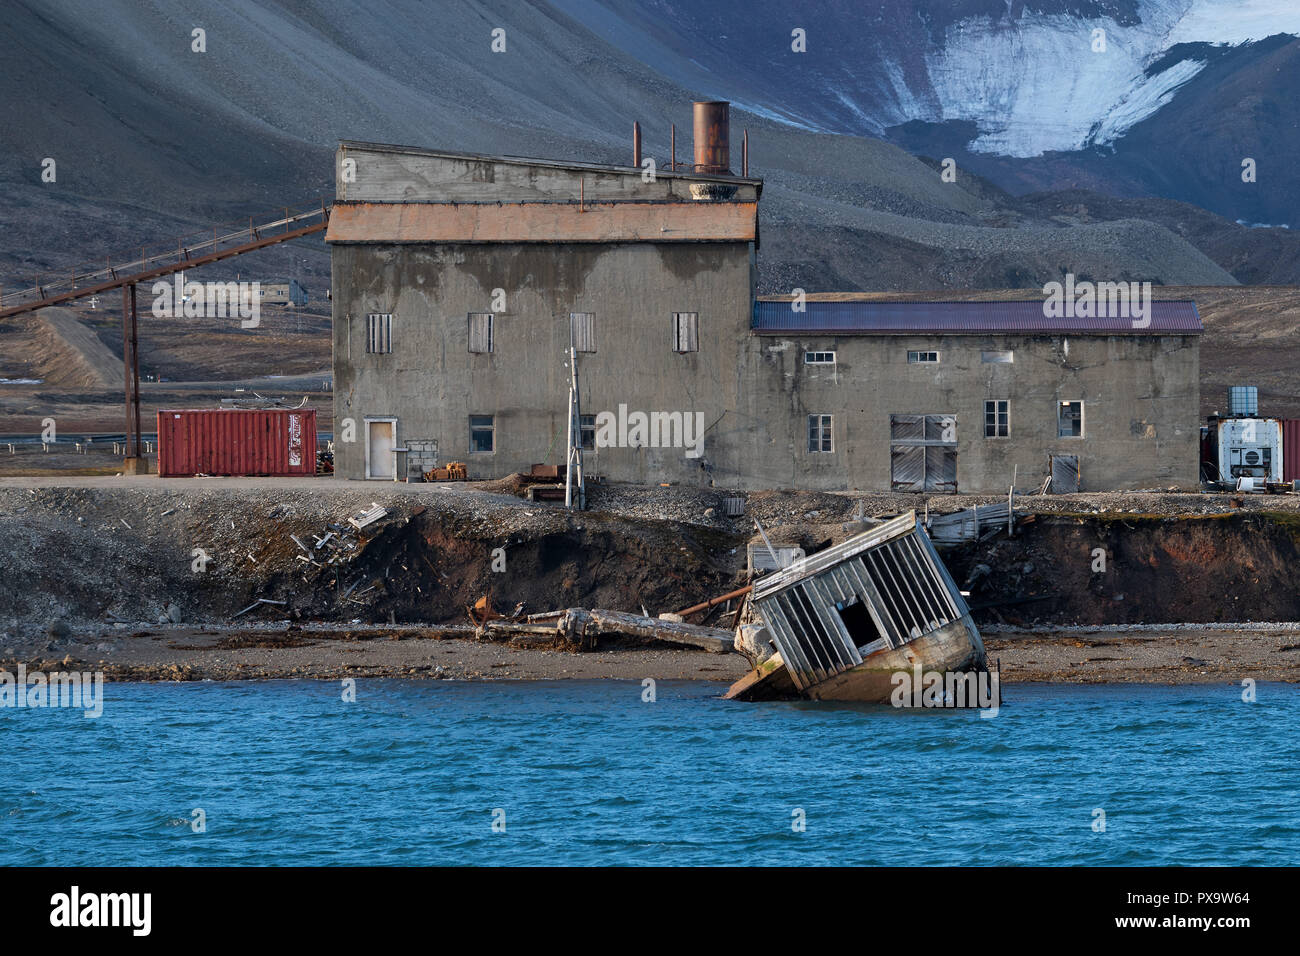 Bâtiment vétuste de l'époque de l'extraction du charbon, Ny-Ålesund, l'île de Spitzberg Spitzberg, archipel, Svalbard et Jan Mayen Banque D'Images